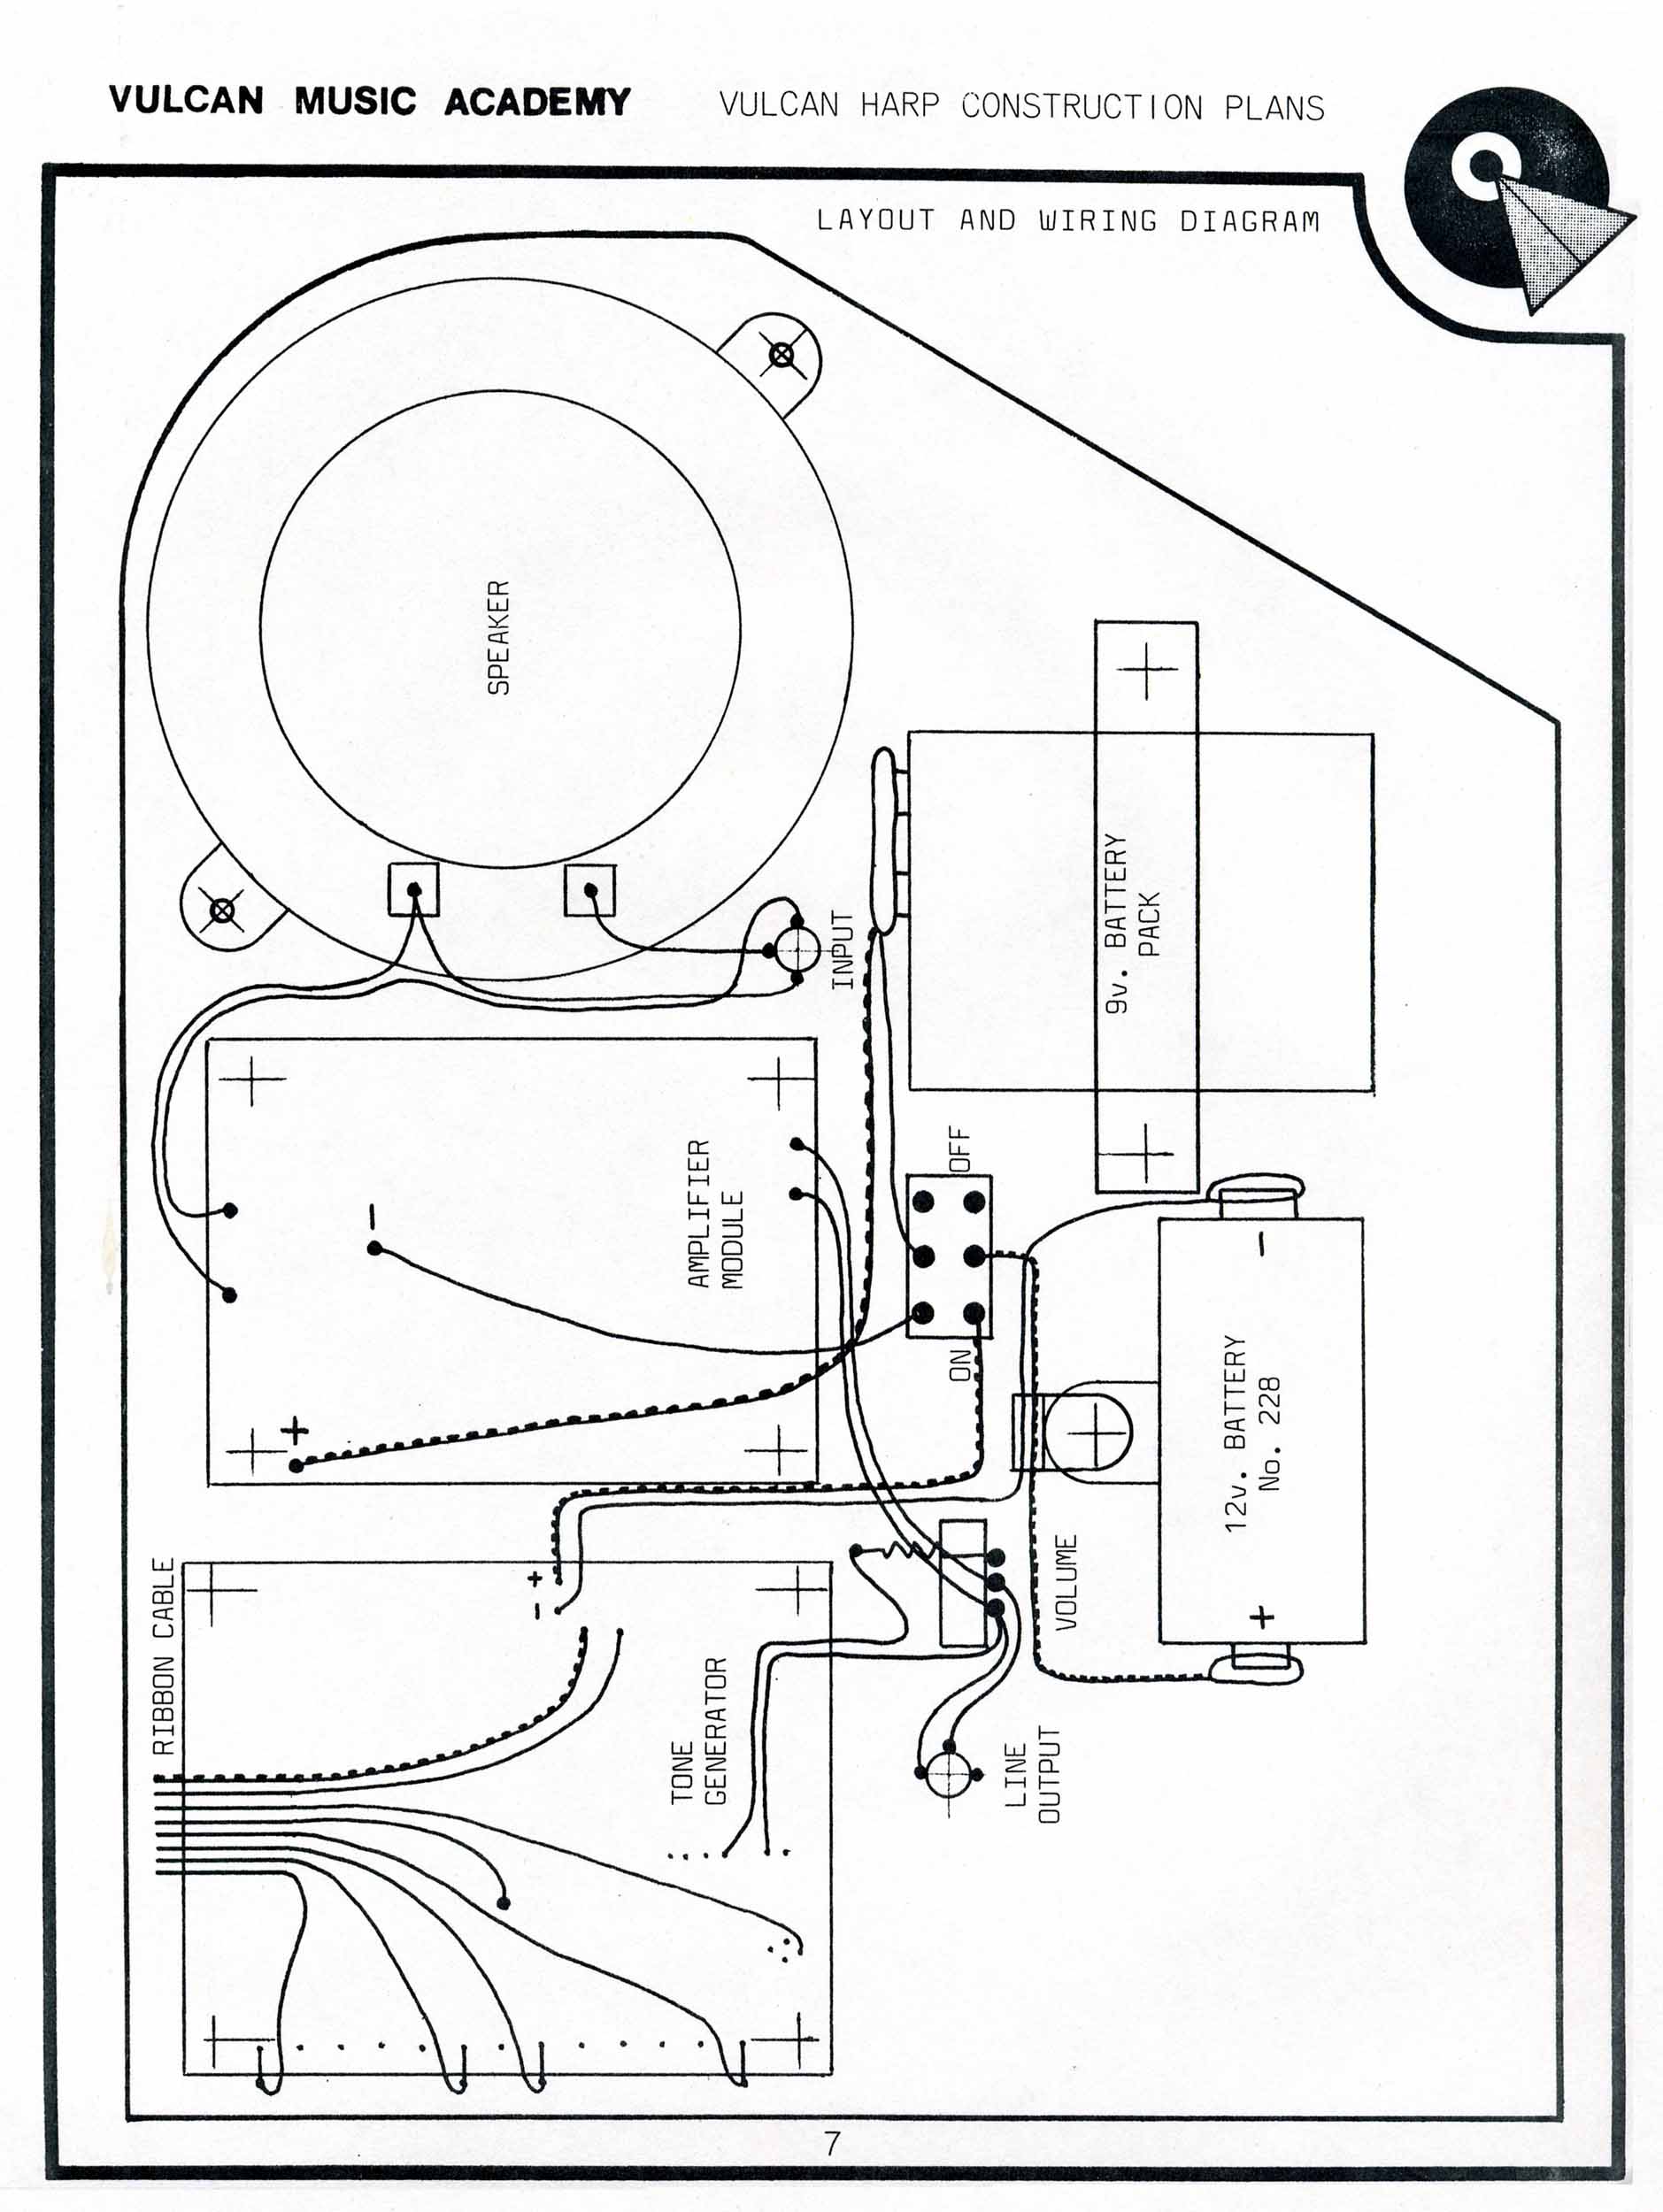 e47481vulcan-harp-construction-plans-sheet-7z219.jpg